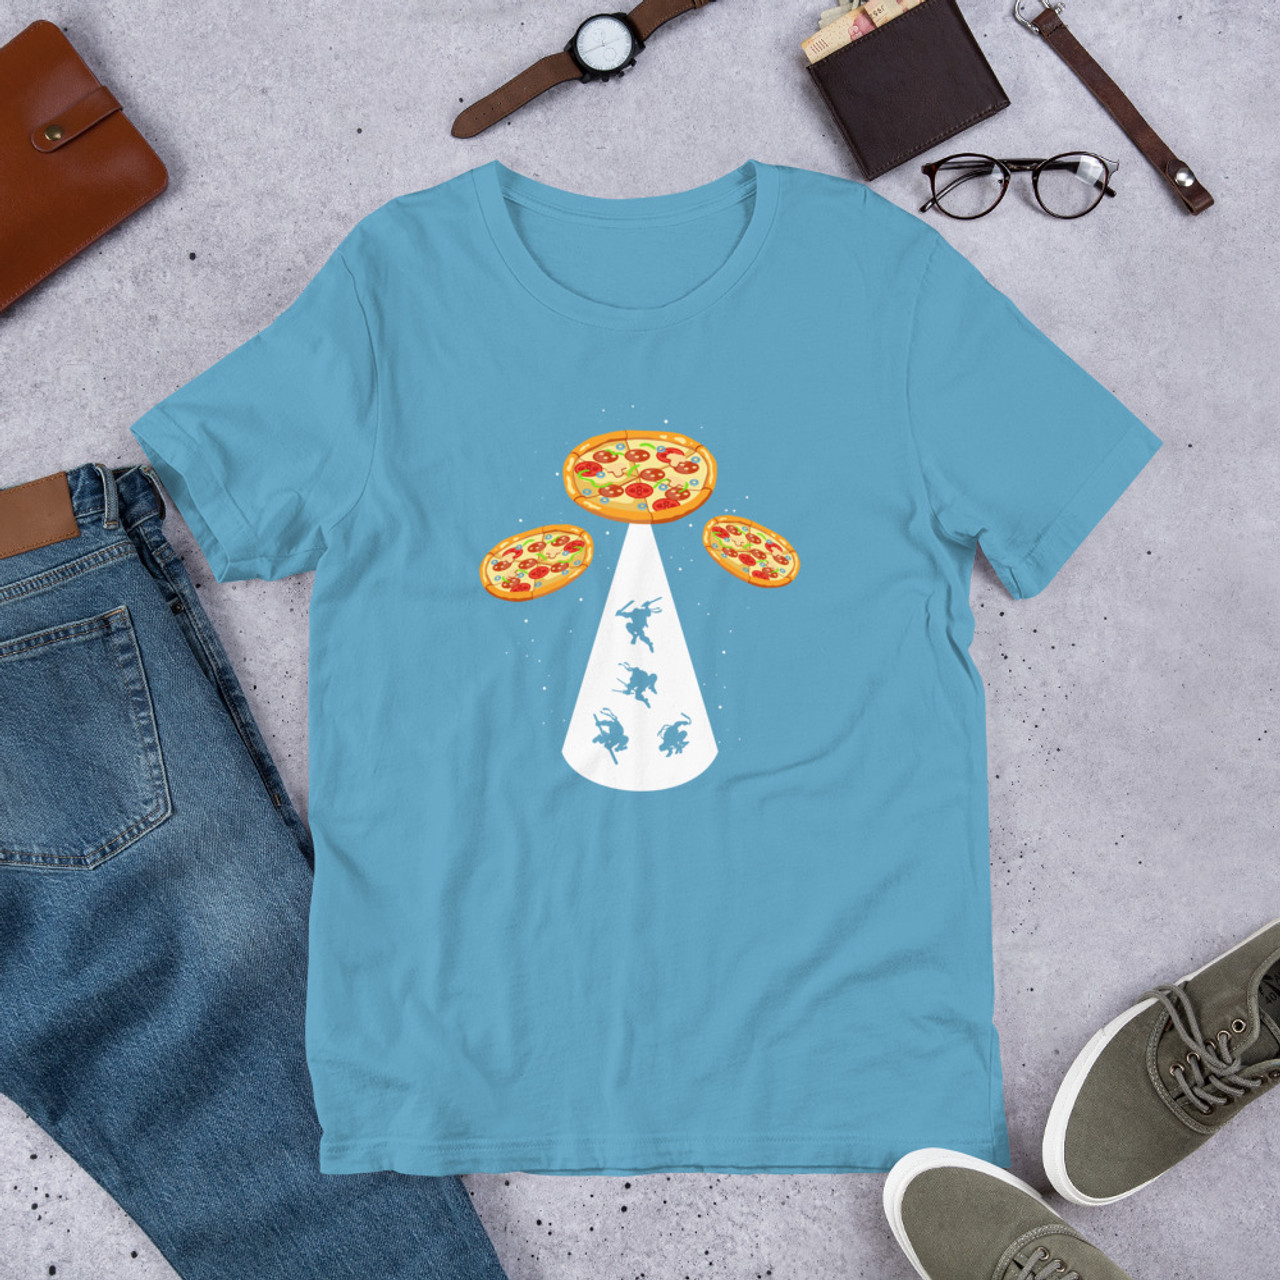 Ocean Blue T-Shirt - Bella + Canvas 3001 Pizza UFO